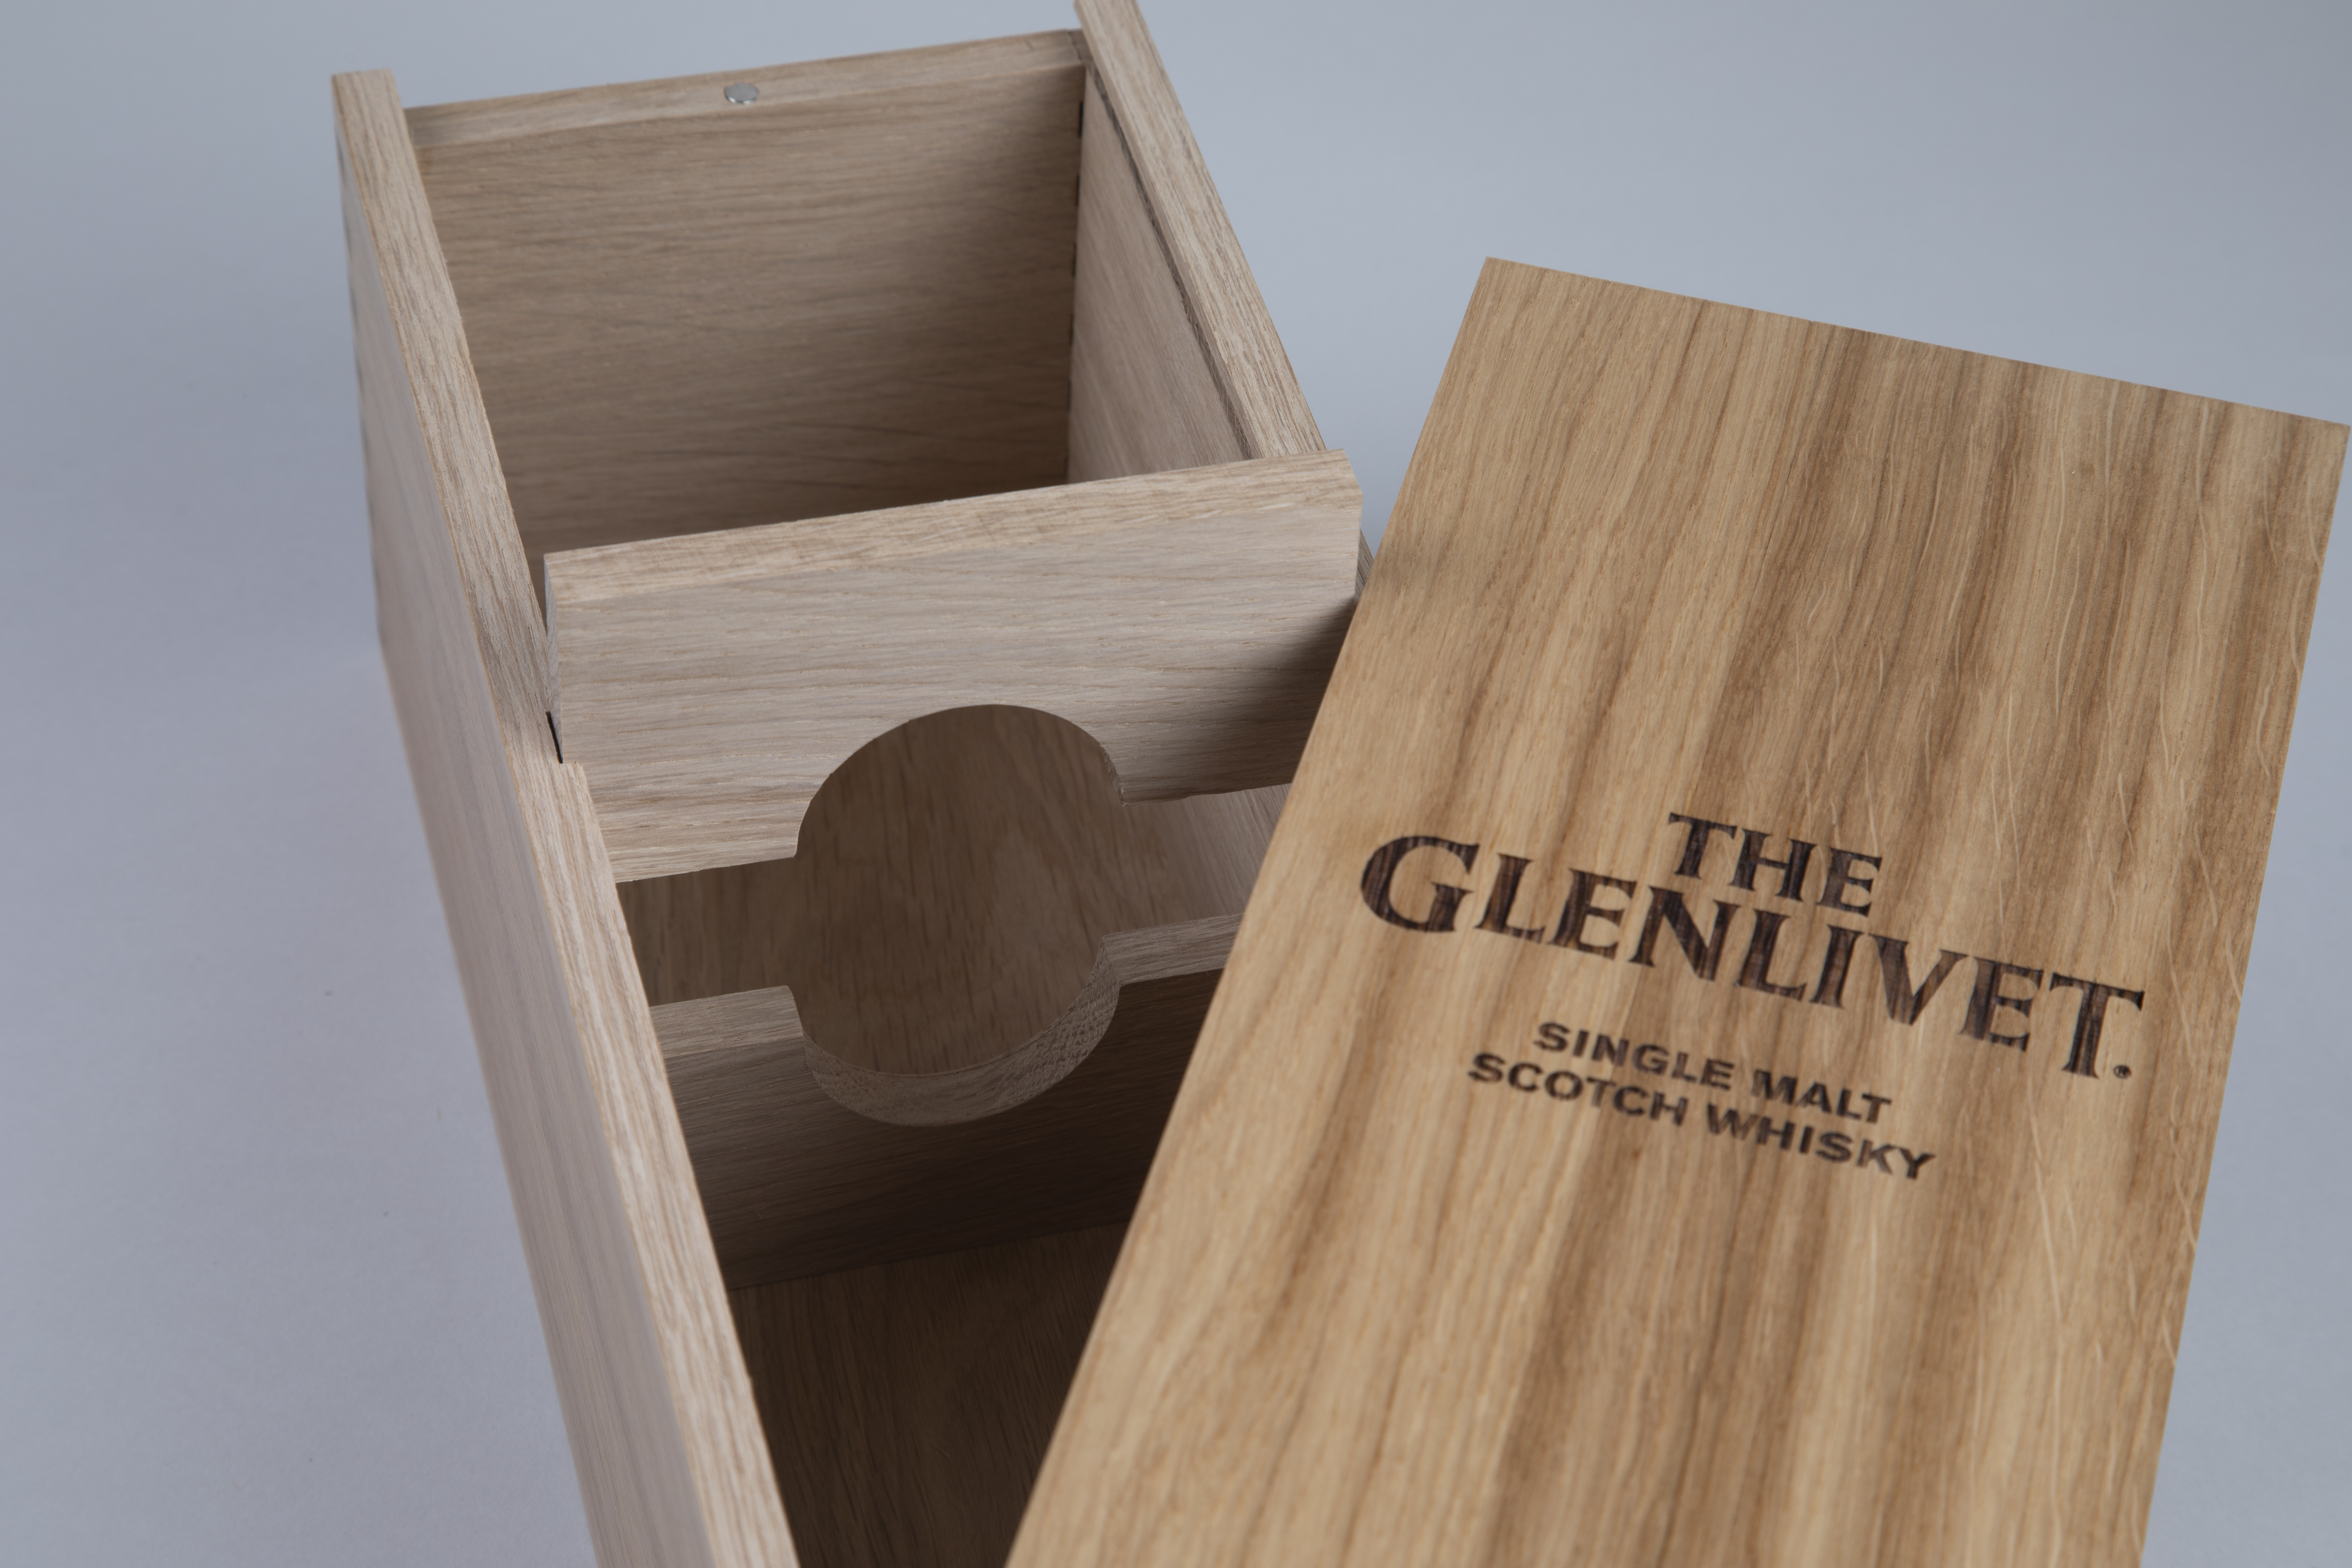 The Glenlivet whiskey custom wooden box package.